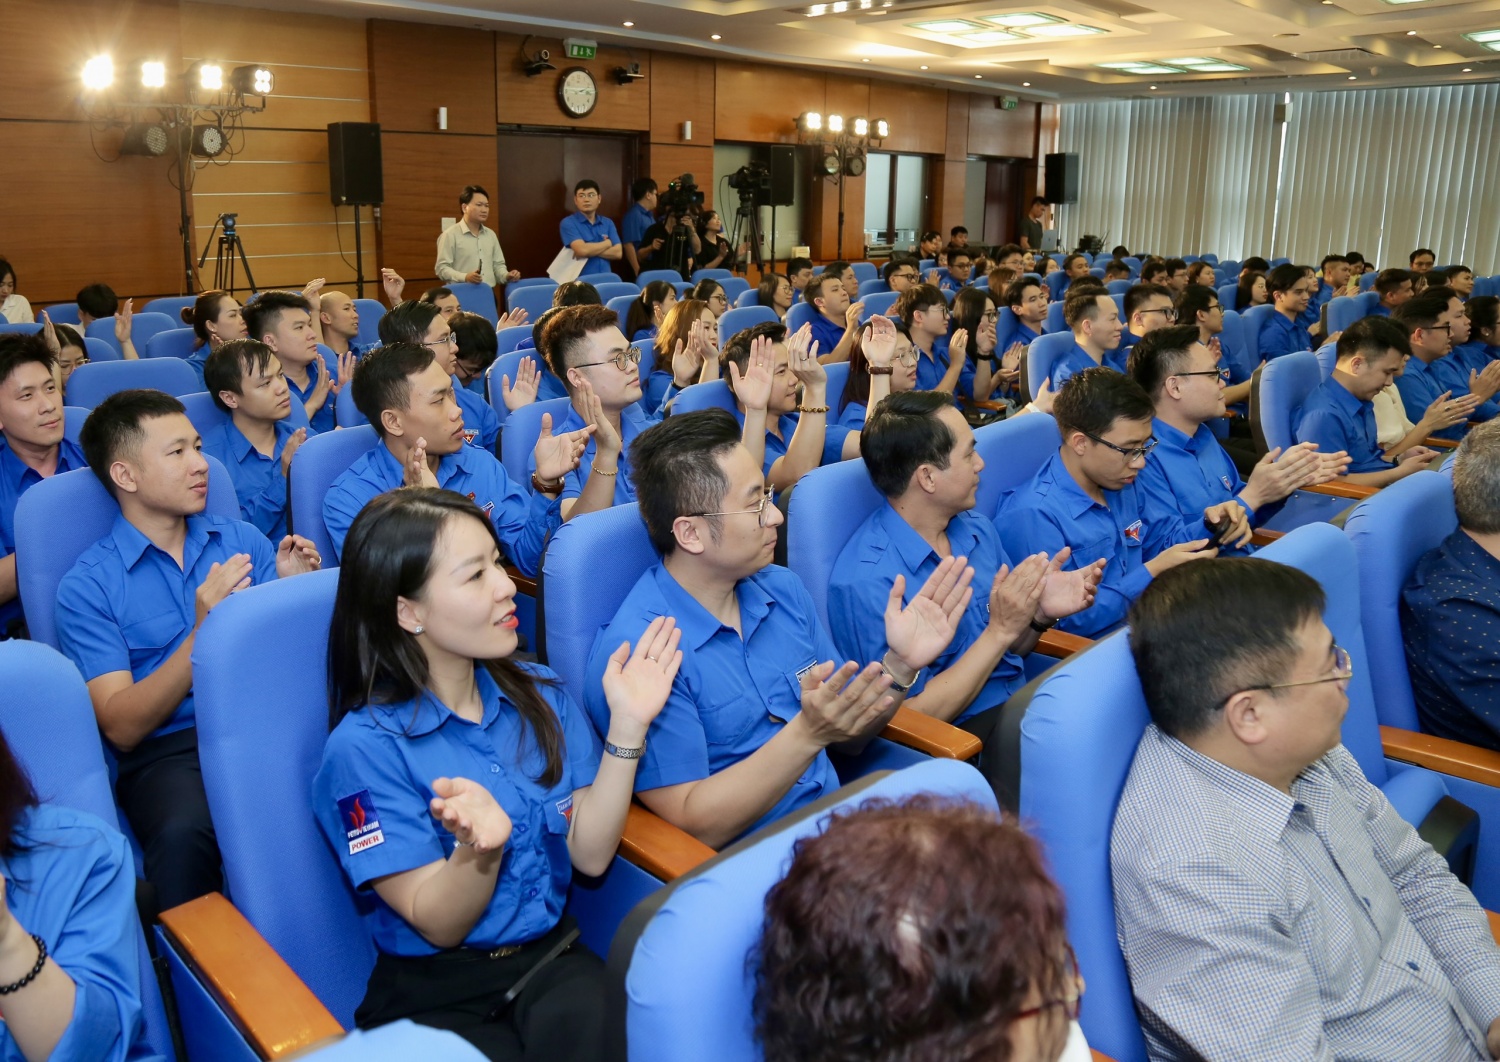 (LIVE) Tổng Giám đốc Petrovietnam Lê Ngọc Sơn đối thoại với đoàn viên, thanh niên Dầu khí về làm mới động lực cũ, bổ sung động lực mới